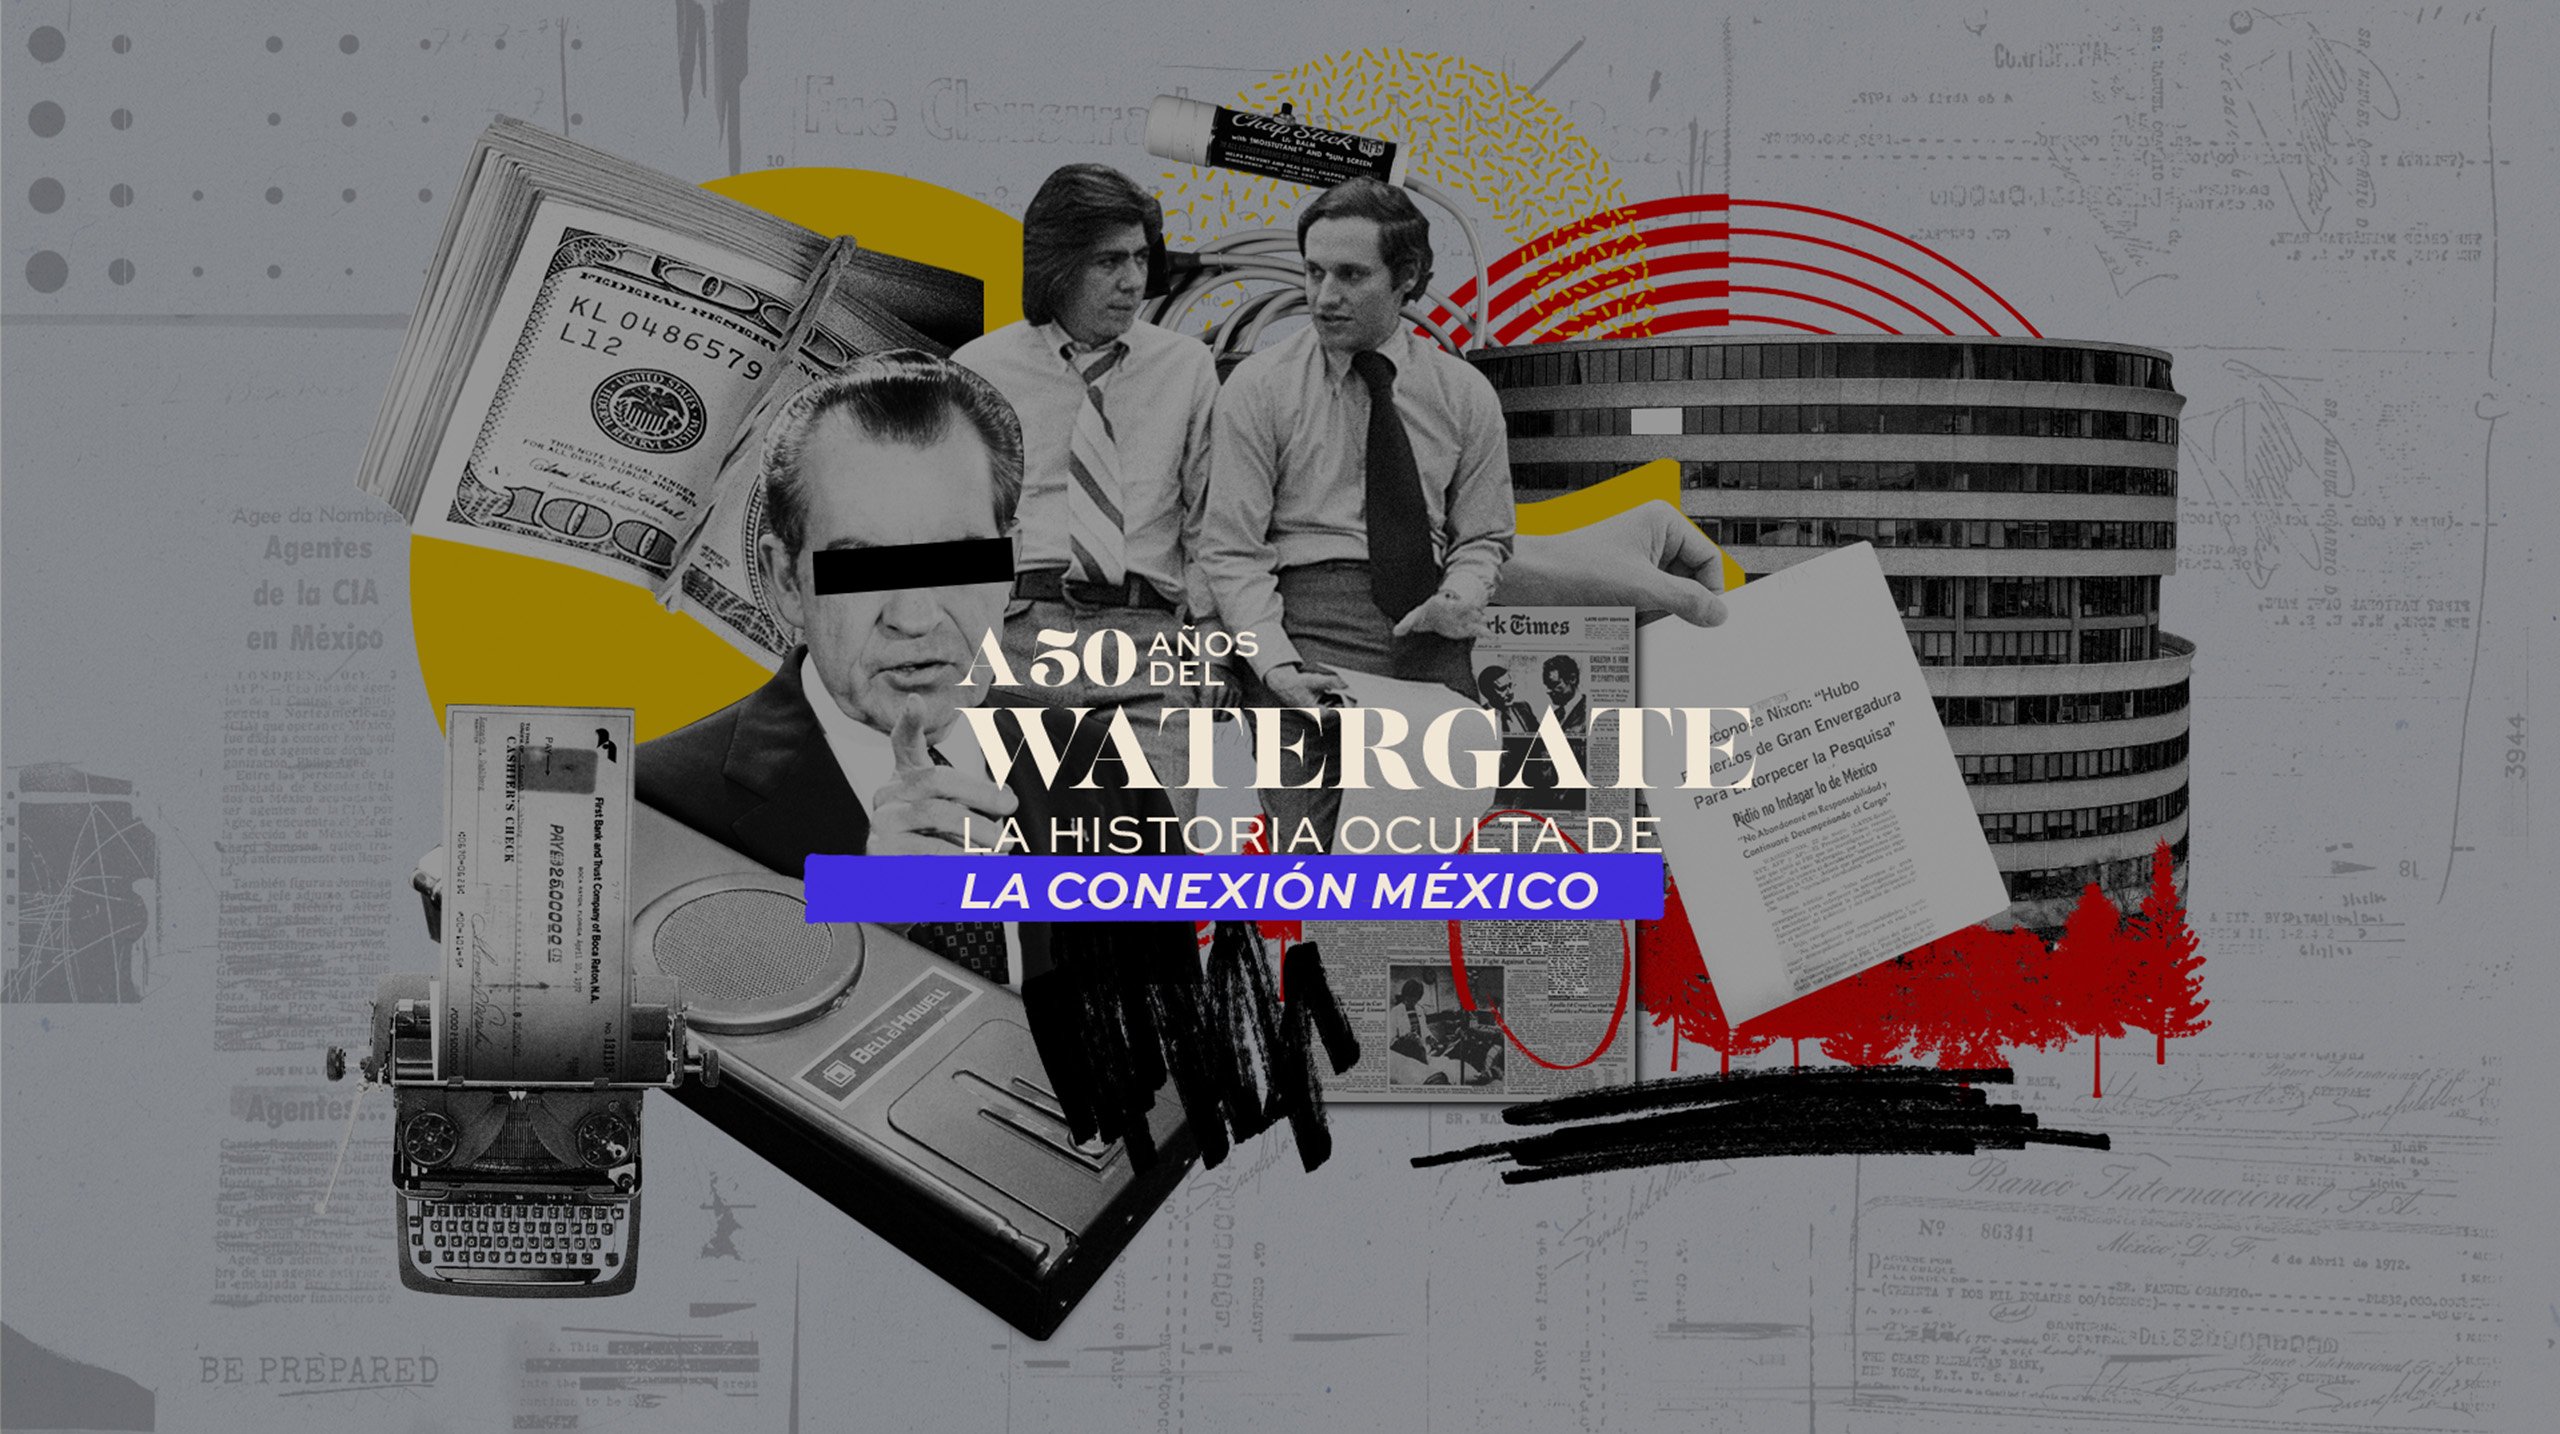 A 50 años del Watergate | La historia oculta de la Conexión México